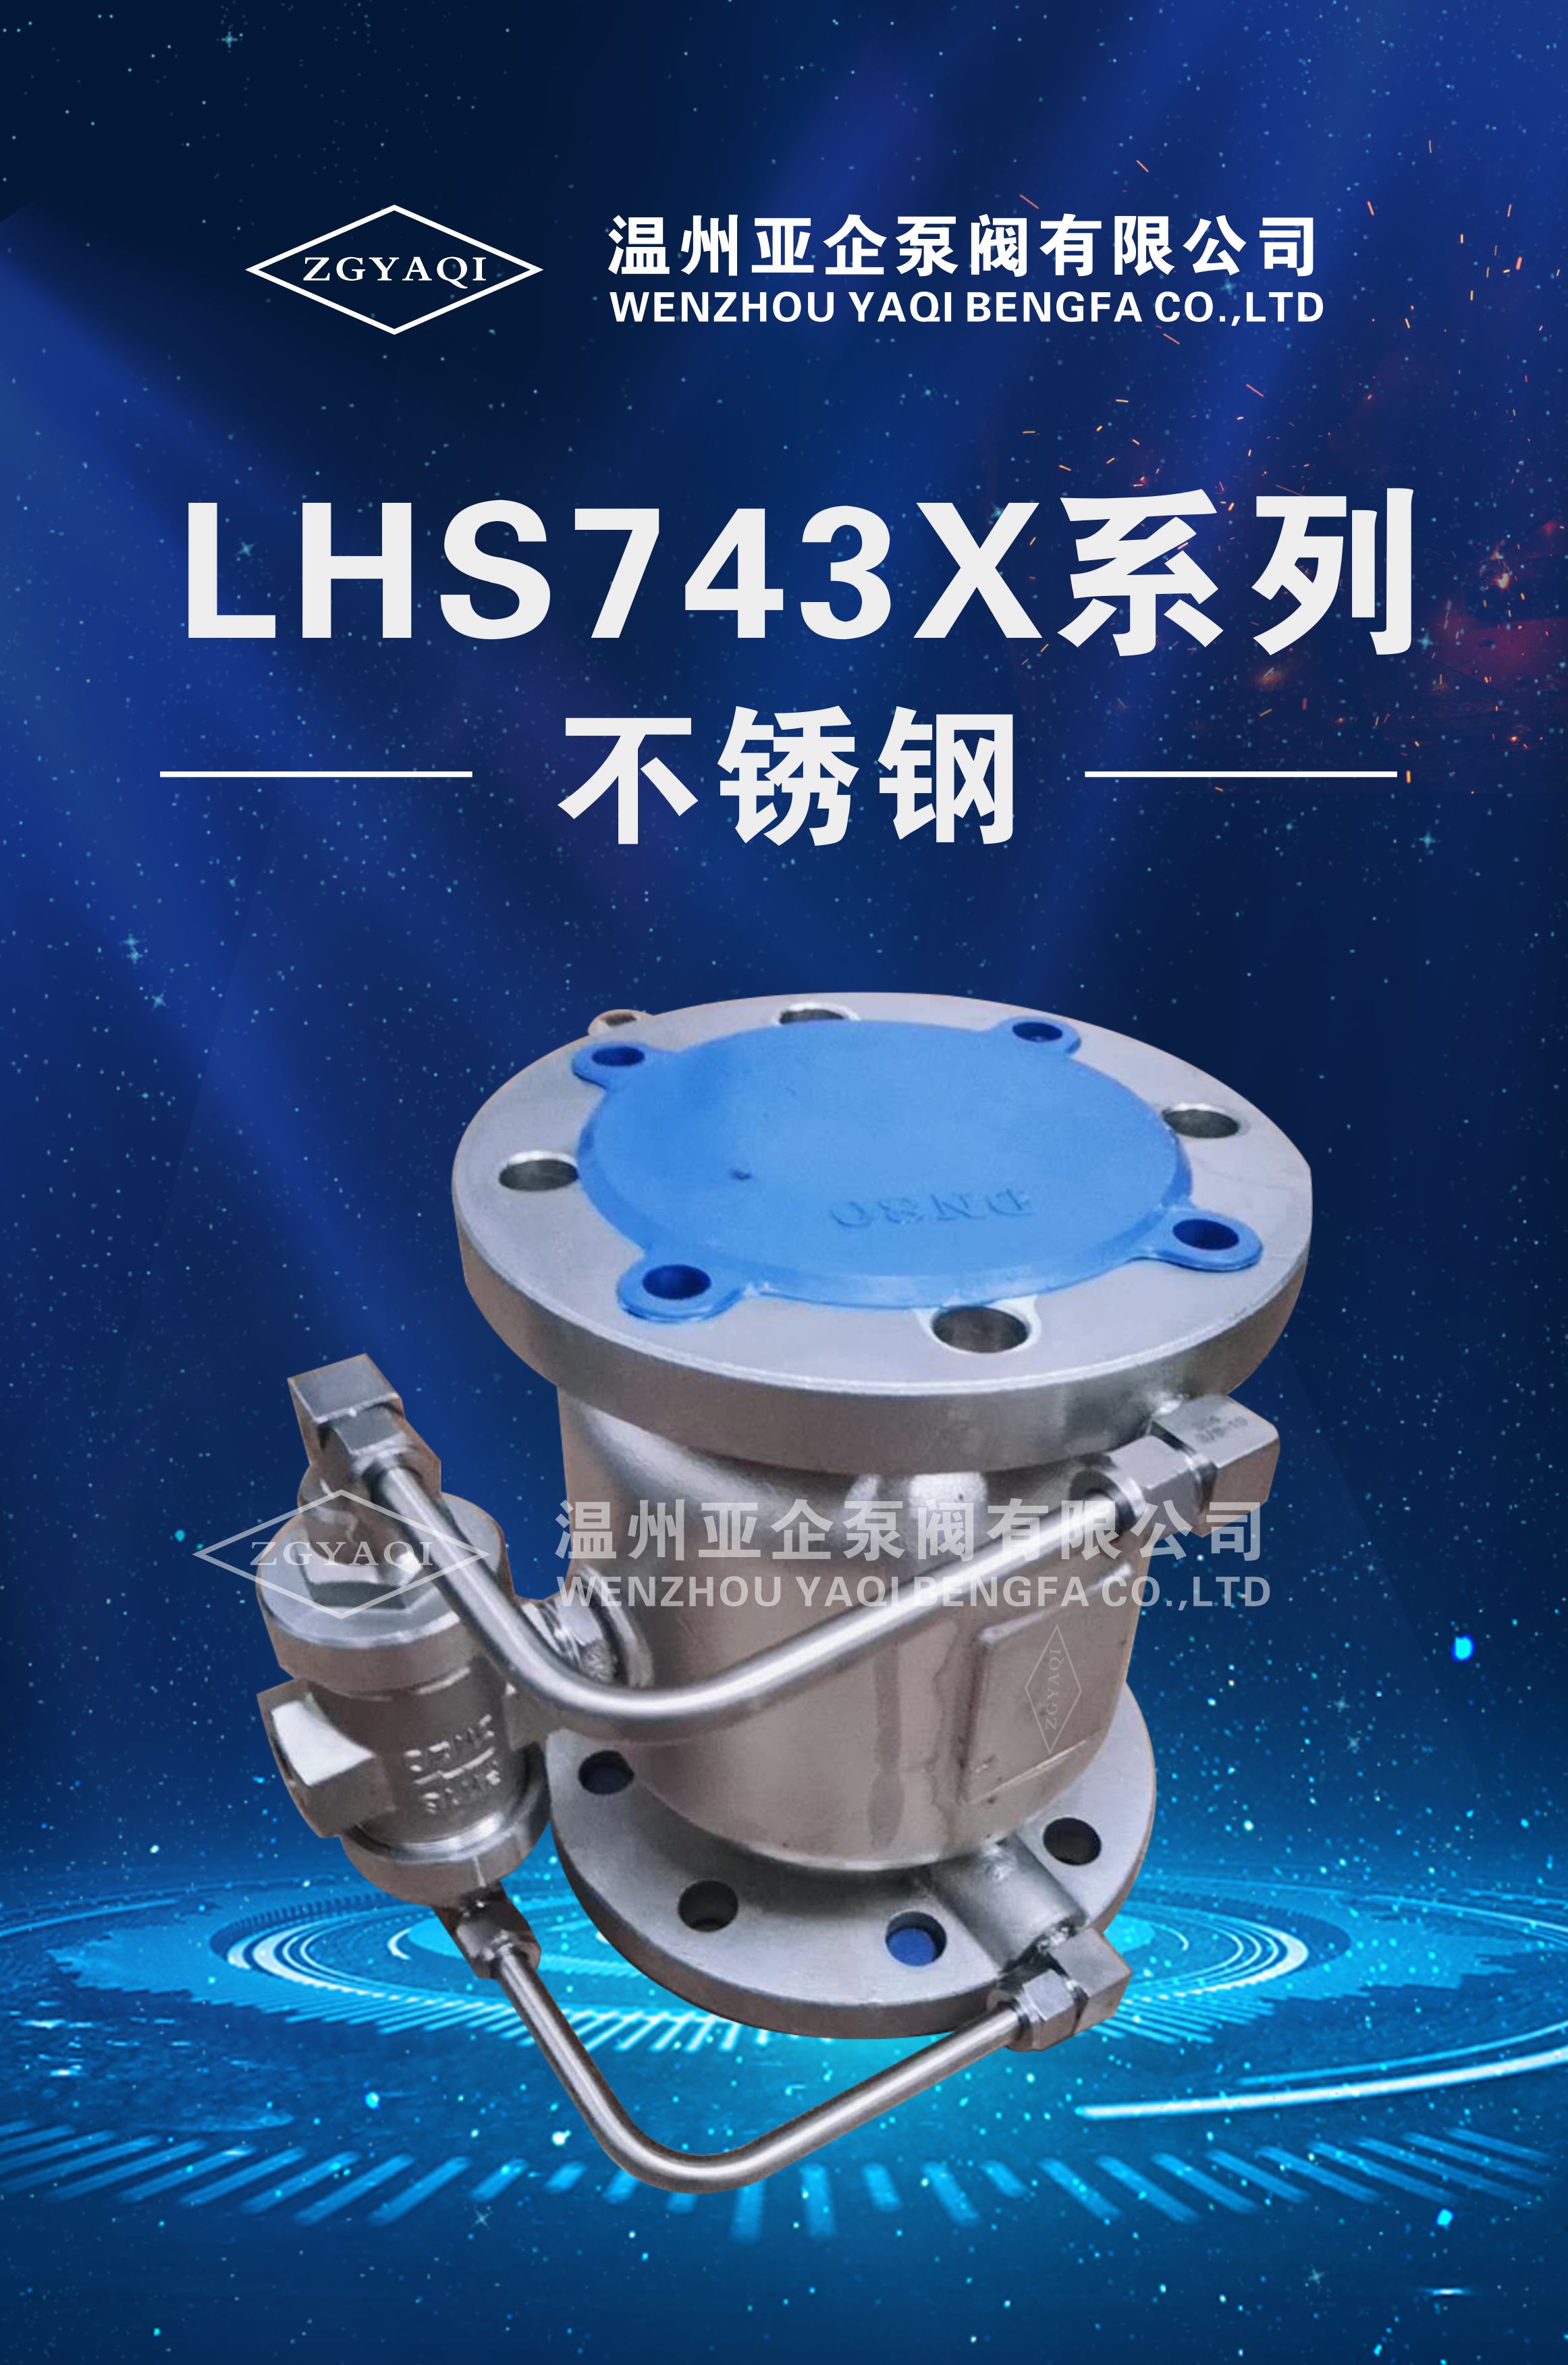 LHS743X系列 不锈钢低阻力倒流防止器销售、多少钱、厂家电话【温州亚企泵阀有限公司】